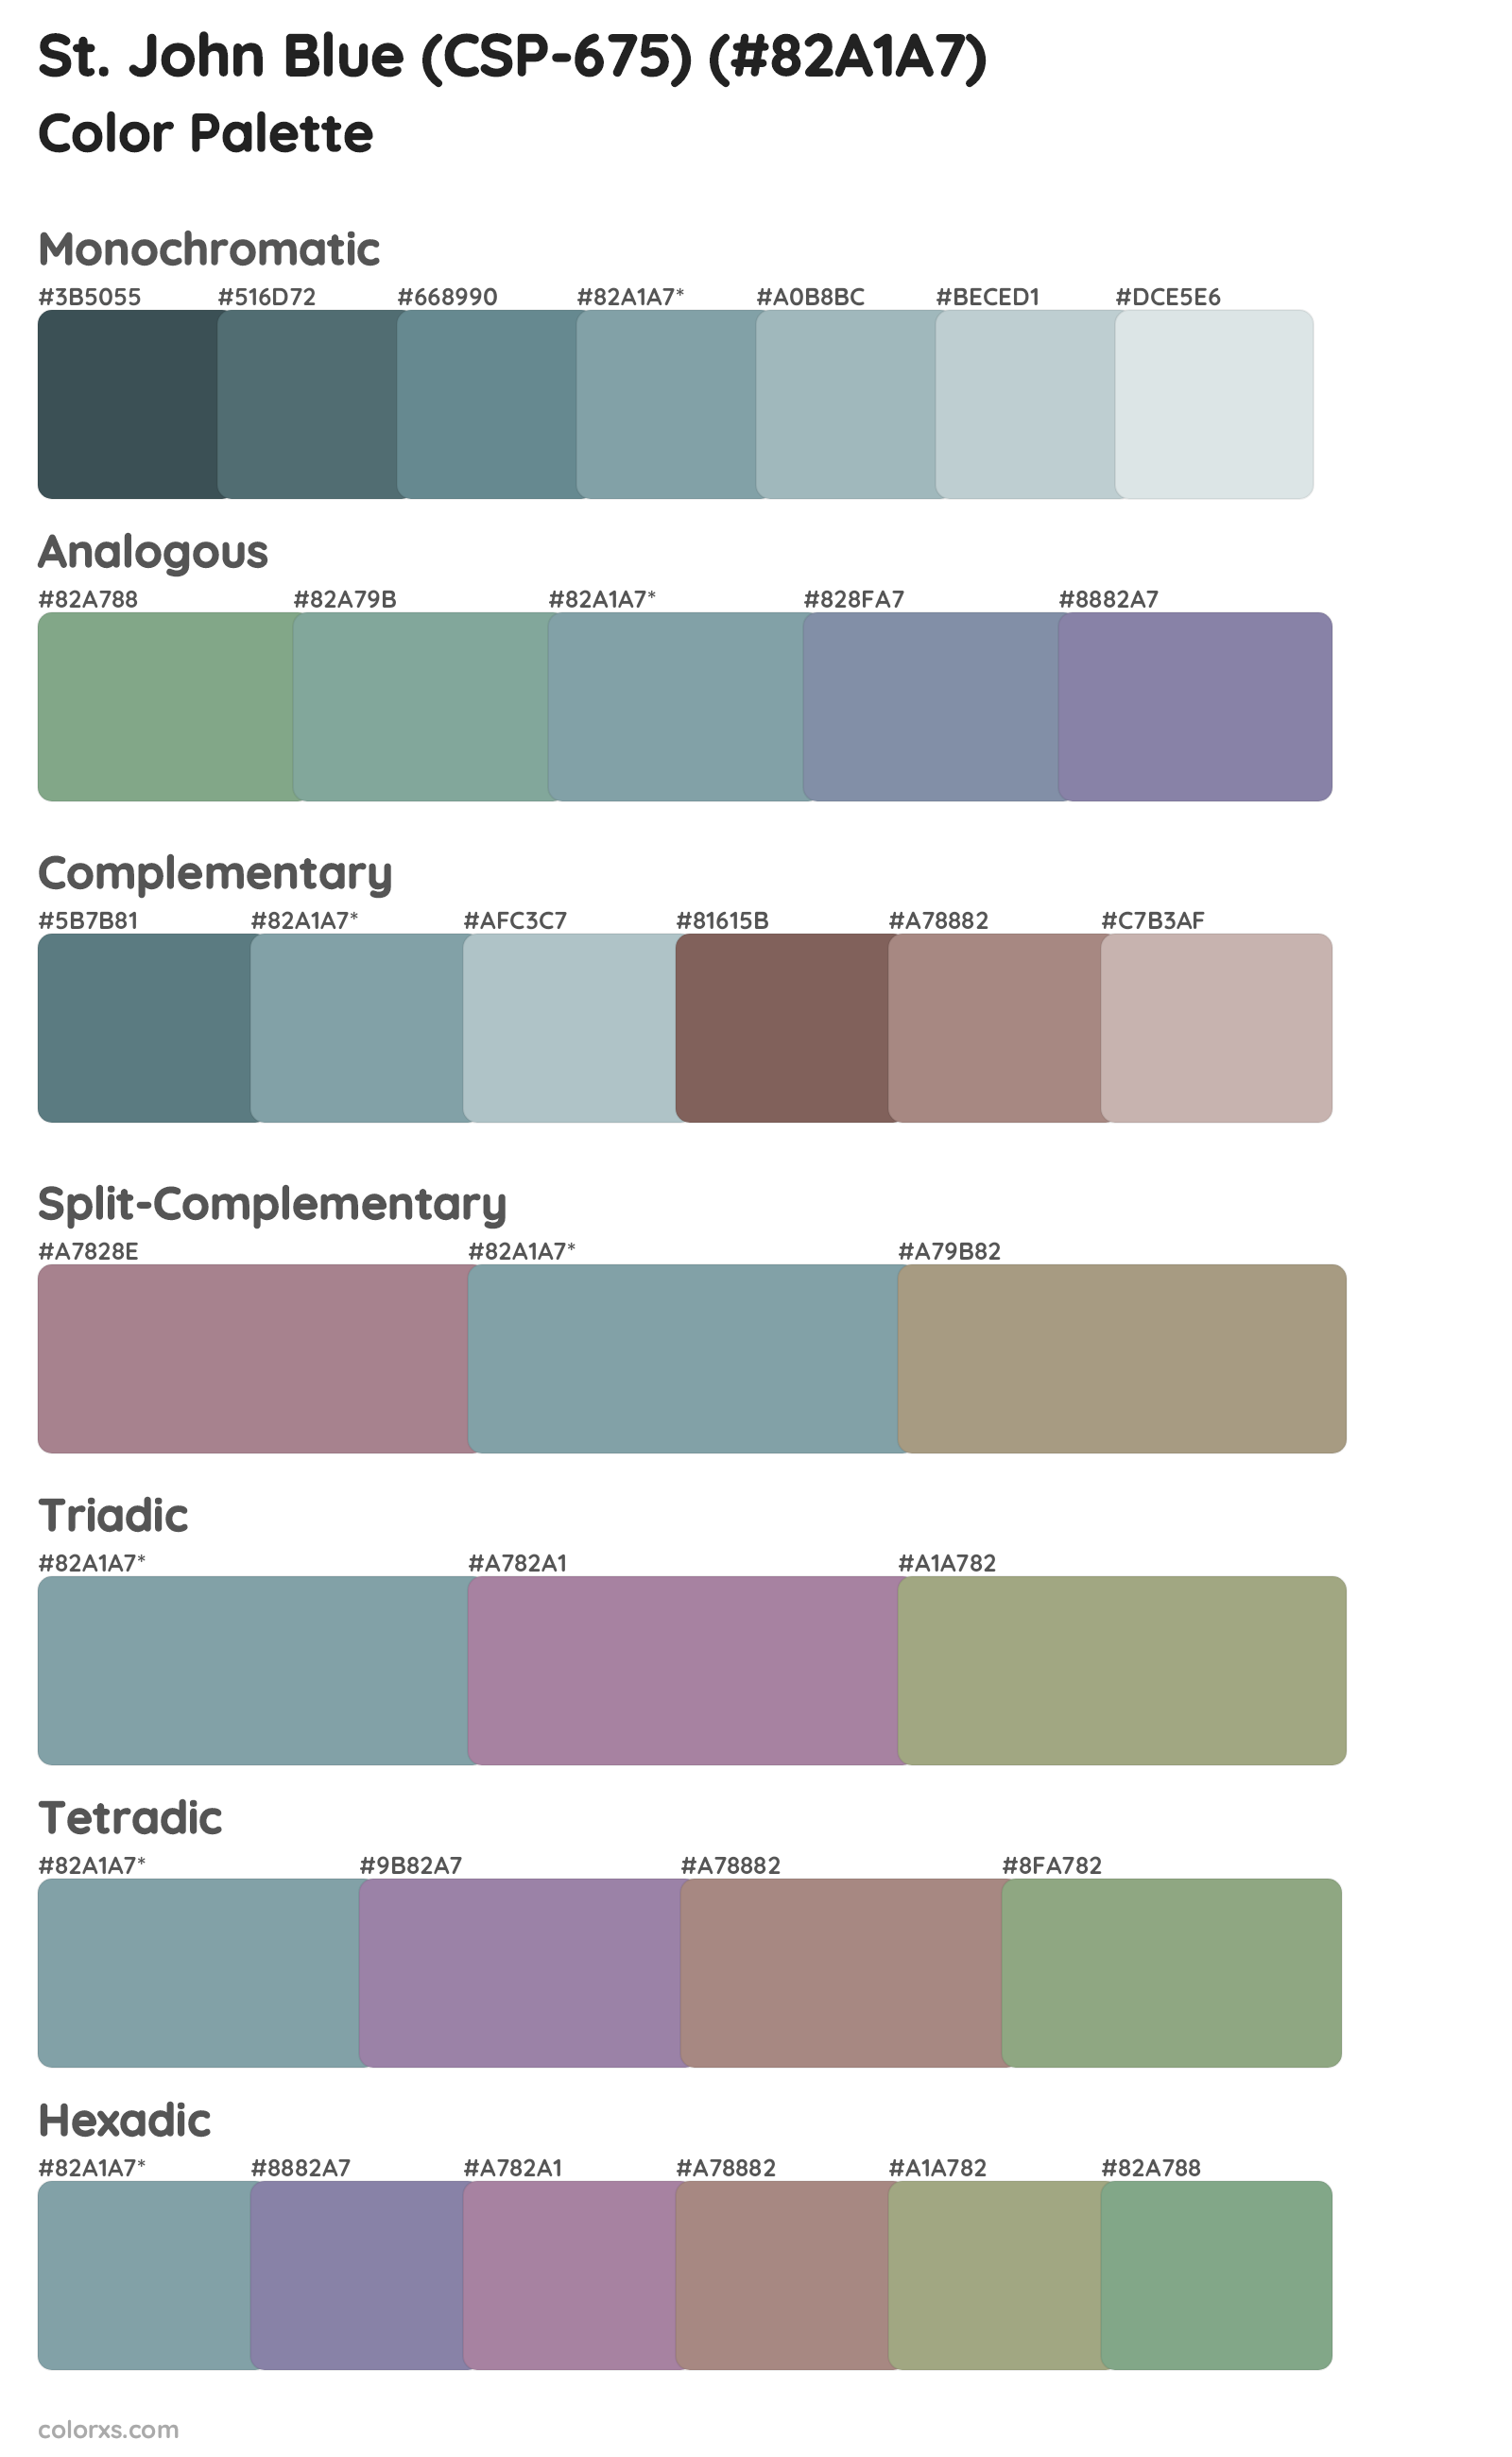 St. John Blue (CSP-675) Color Scheme Palettes